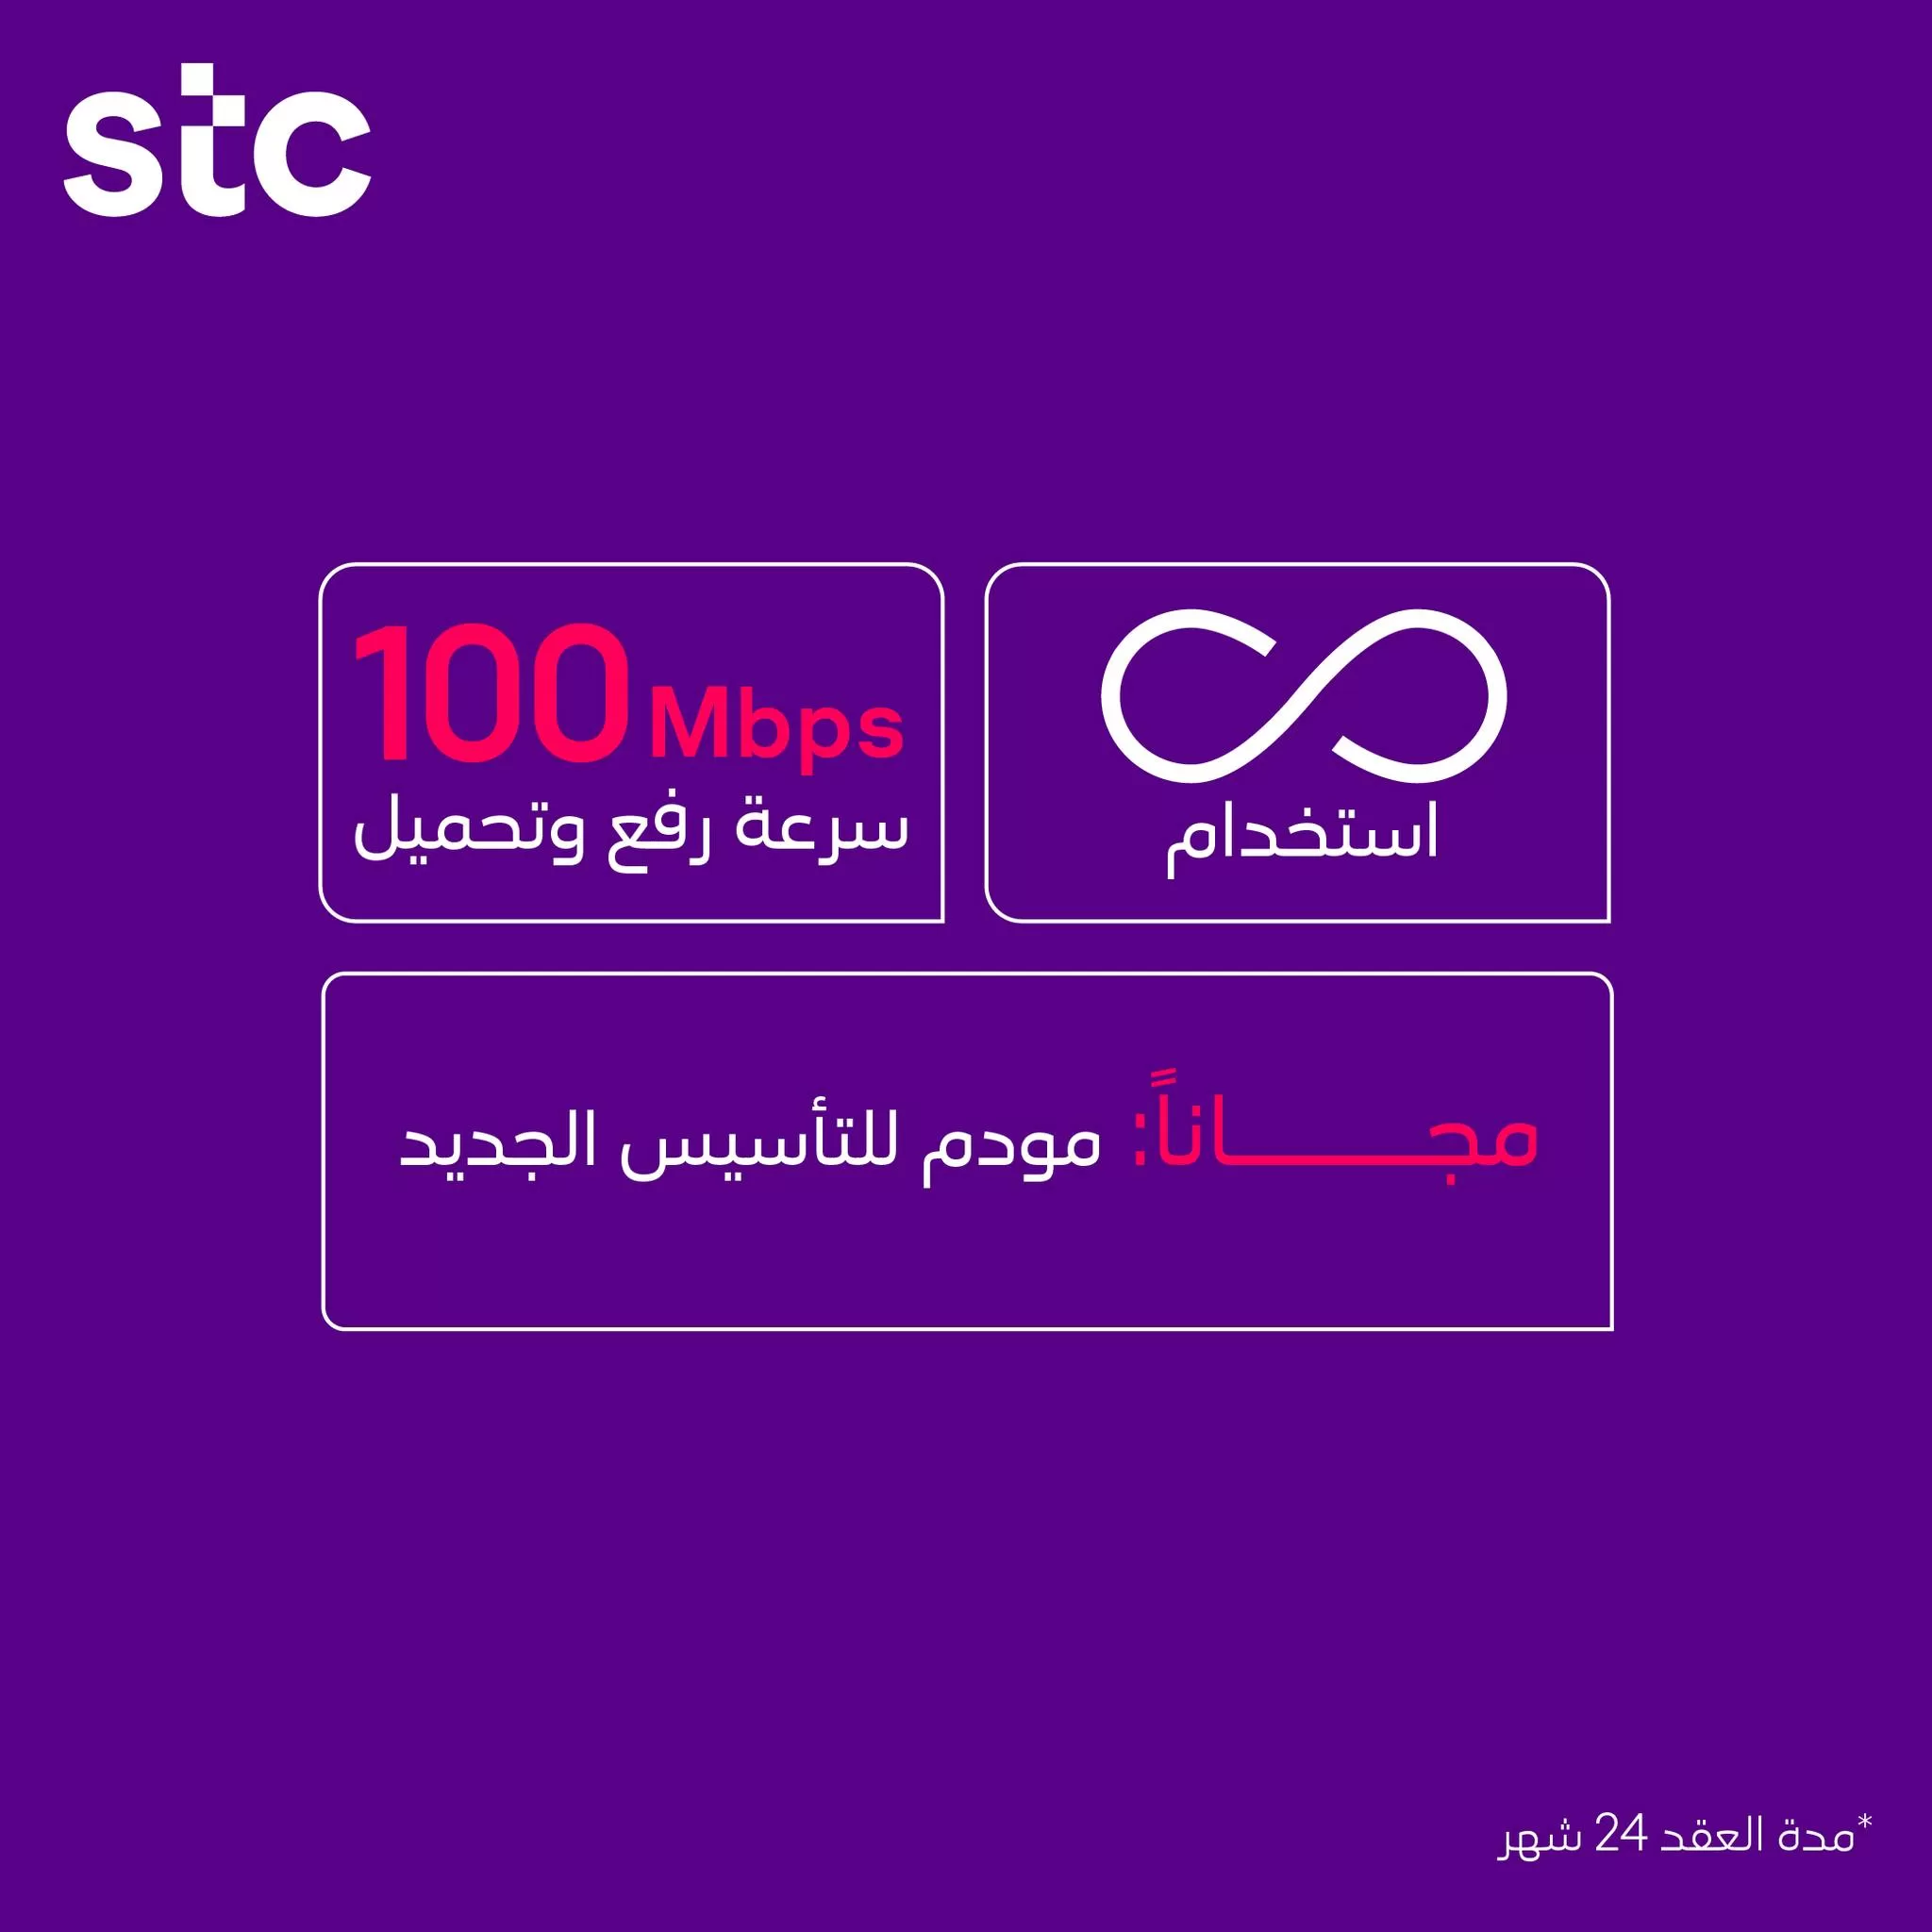 343935658 639380748032356 6477674683766048844 n jpg - عروض اتصالات السعودية علي خدمات الانترنت المباشر | مميزات مختلفة